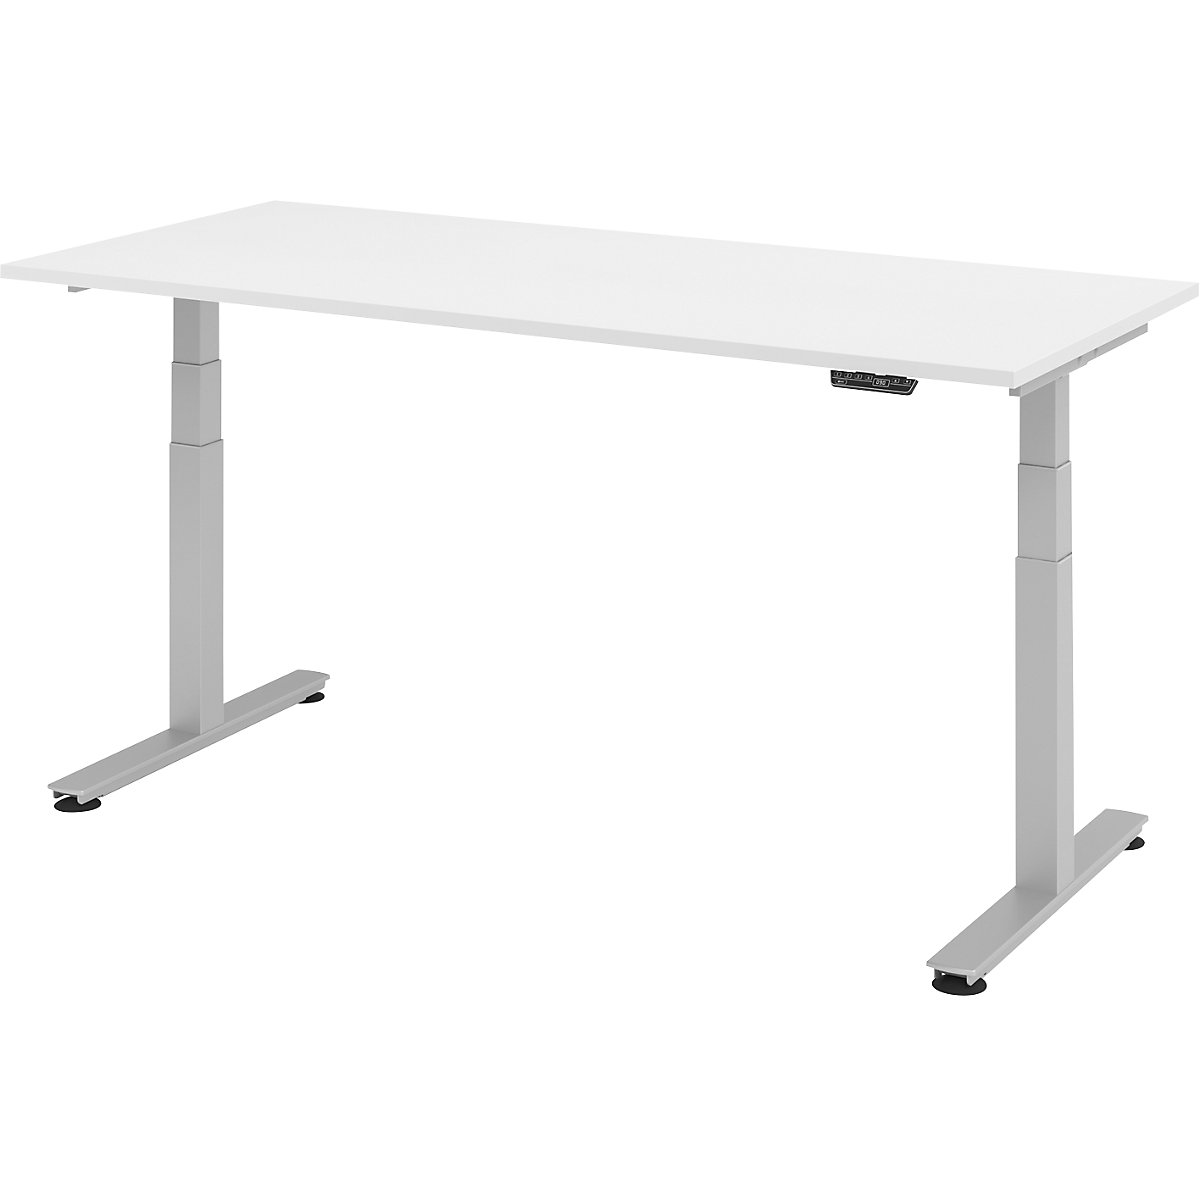 Psací stůl pro práci vestoje, s elektrickým přestavováním výšky UPLINER-2.0, podstavec s nohami ve tvaru T, šířka 1200 mm, bílá-17